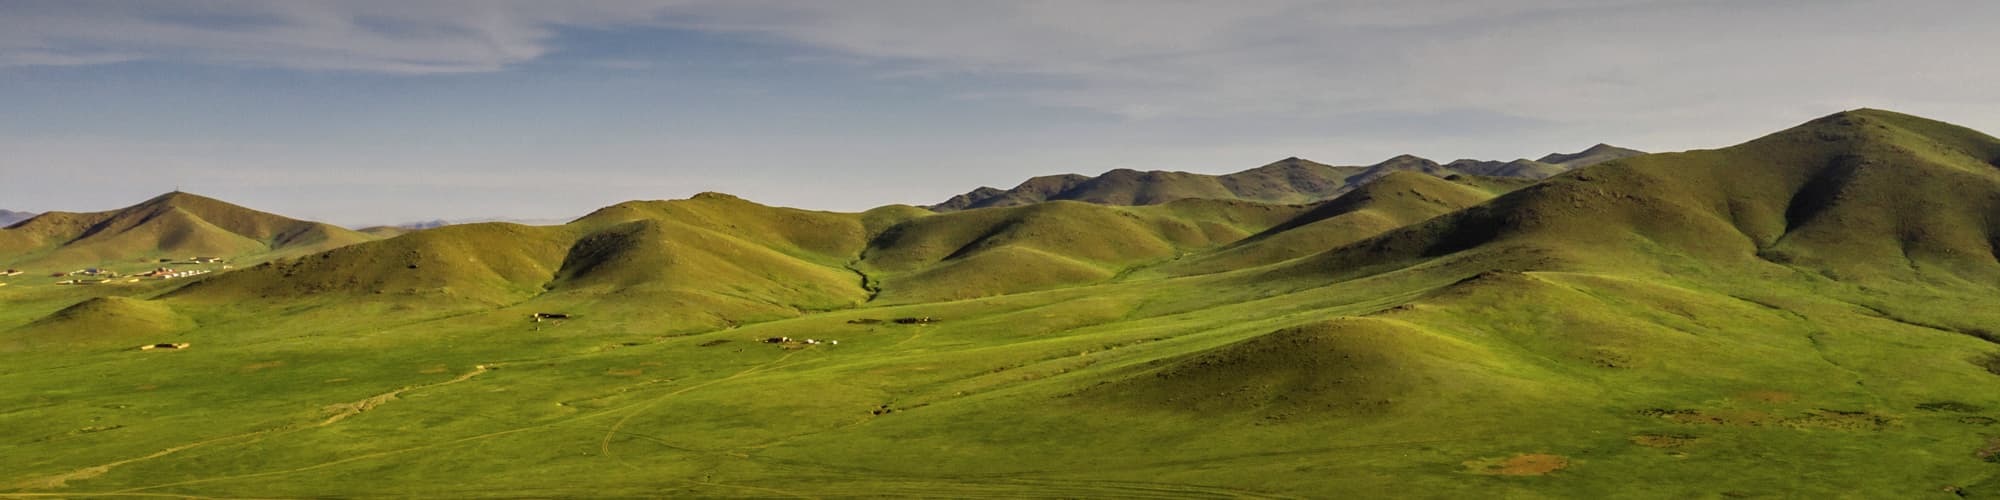 VTT Mongolie © Travel Stock / Adobe Stock